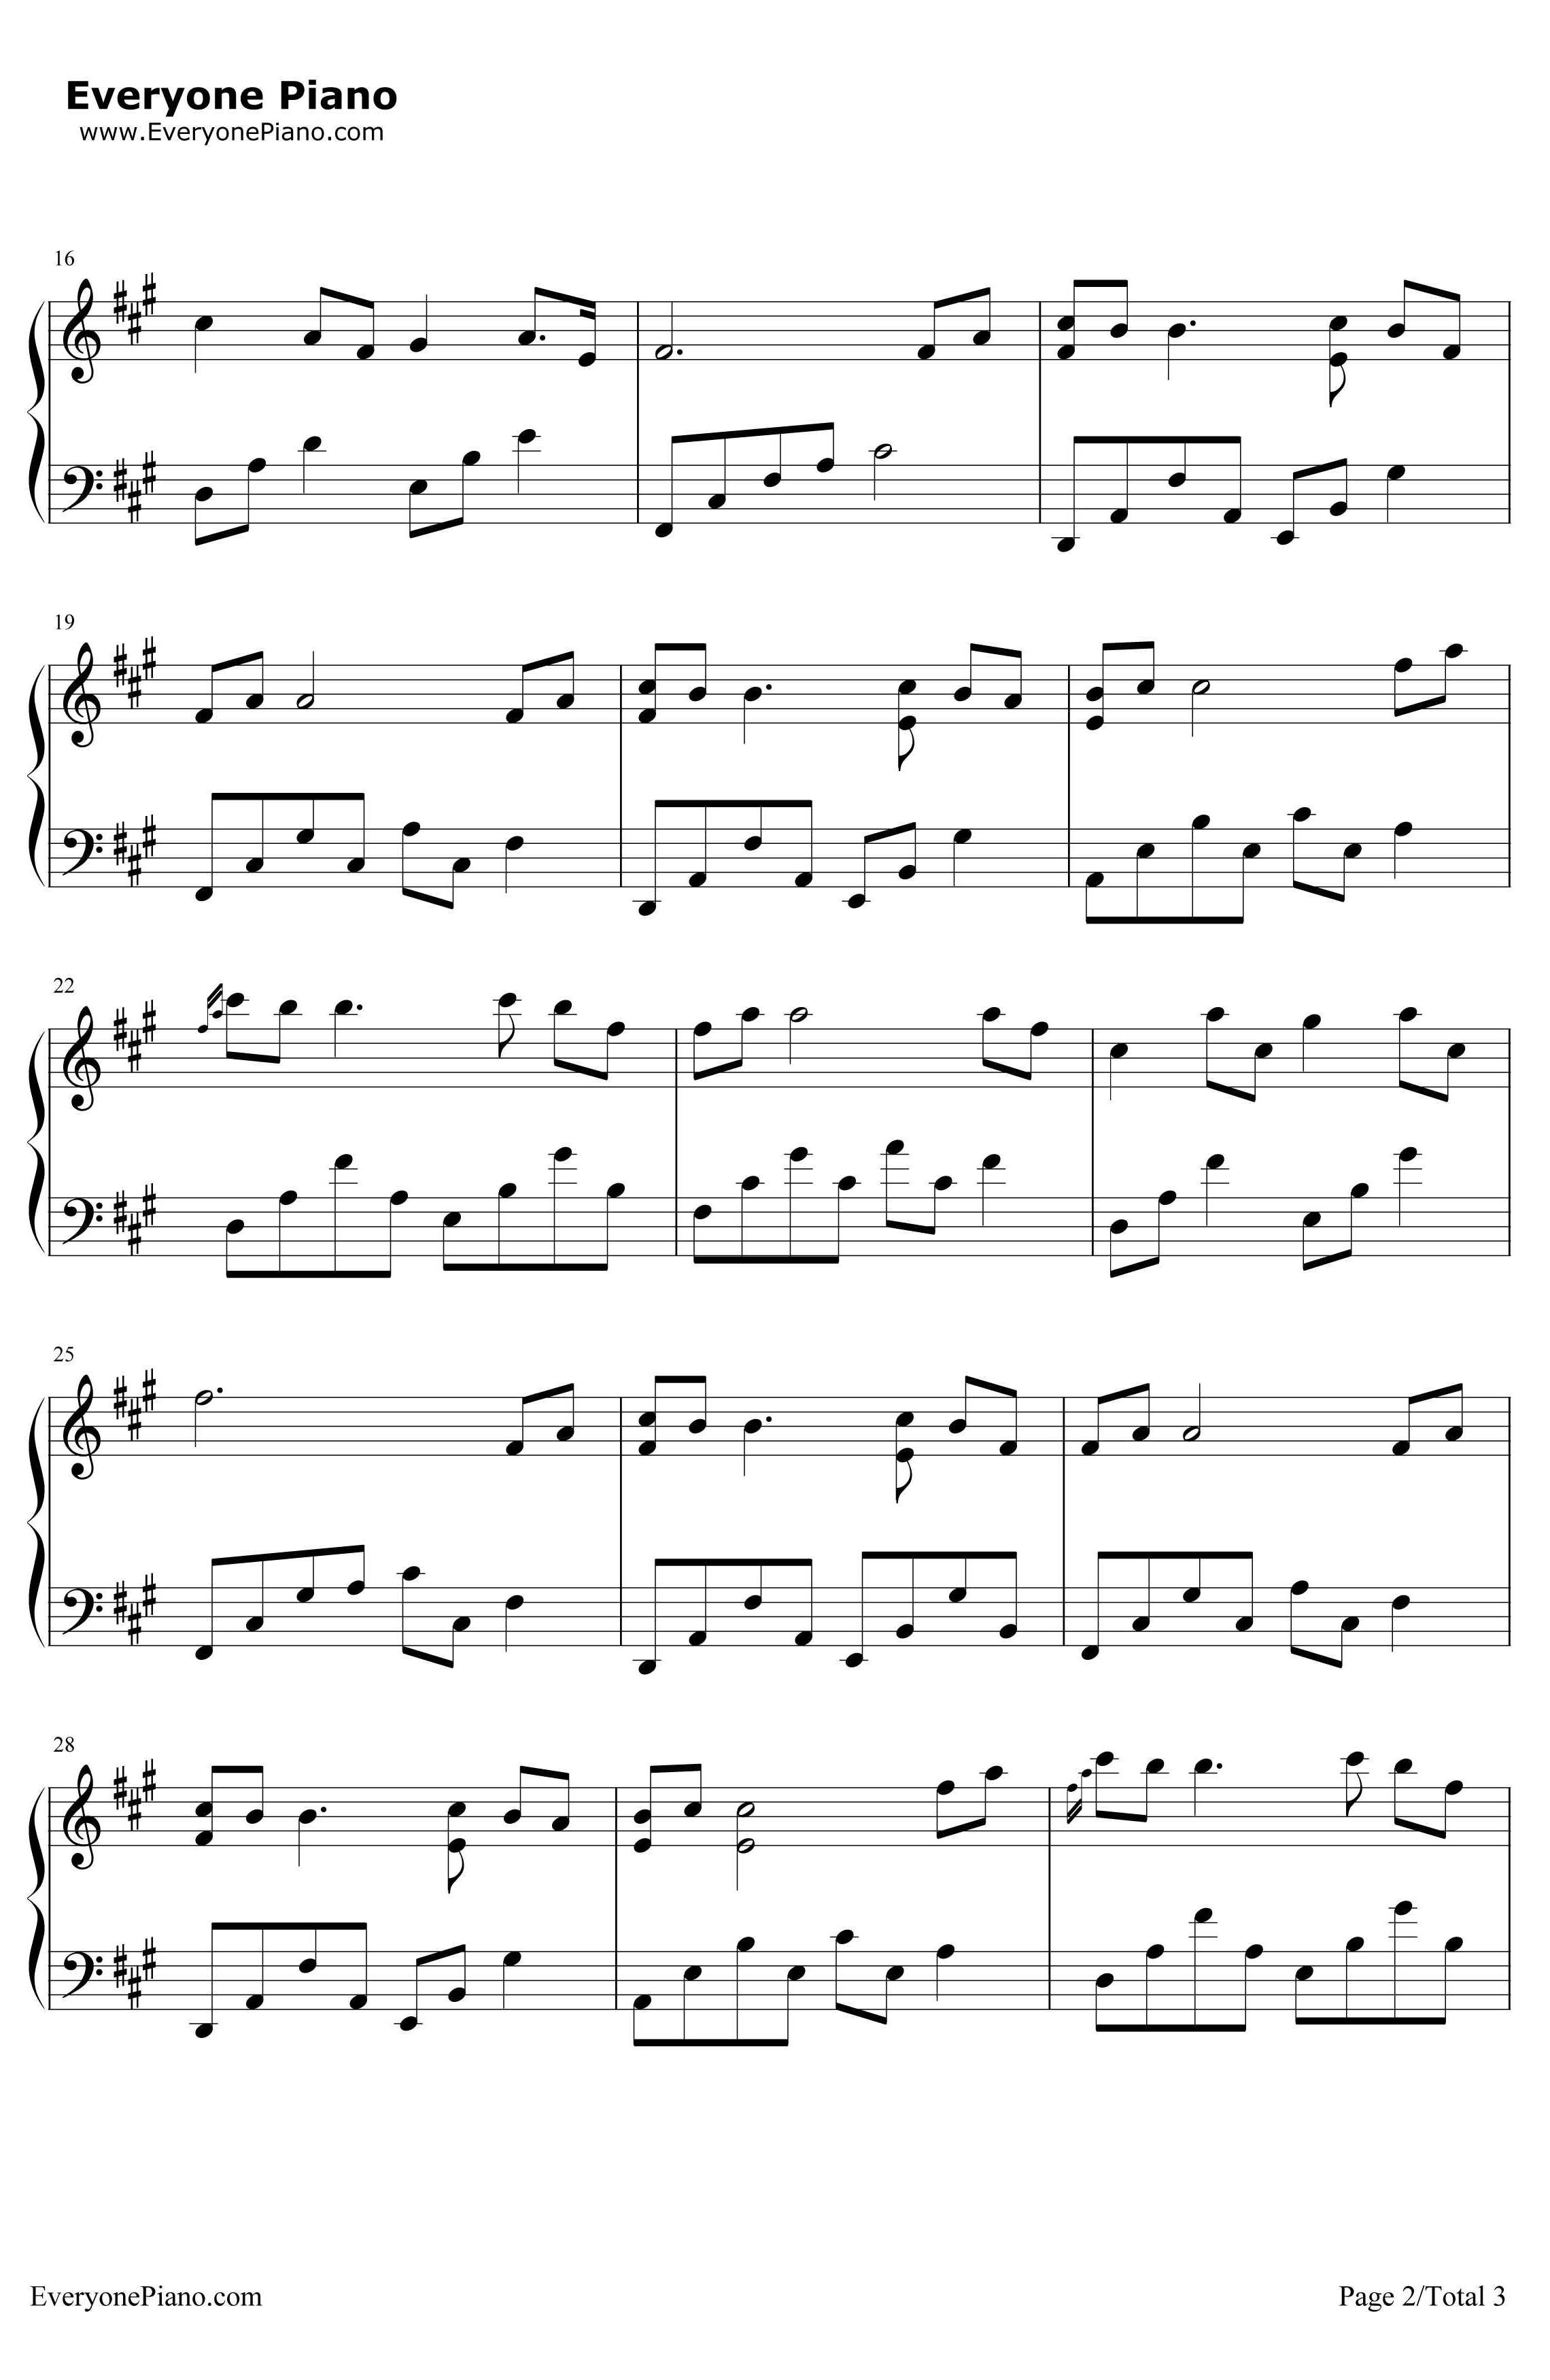 夜的钢琴曲1981钢琴谱-石进-夜的钢琴曲2